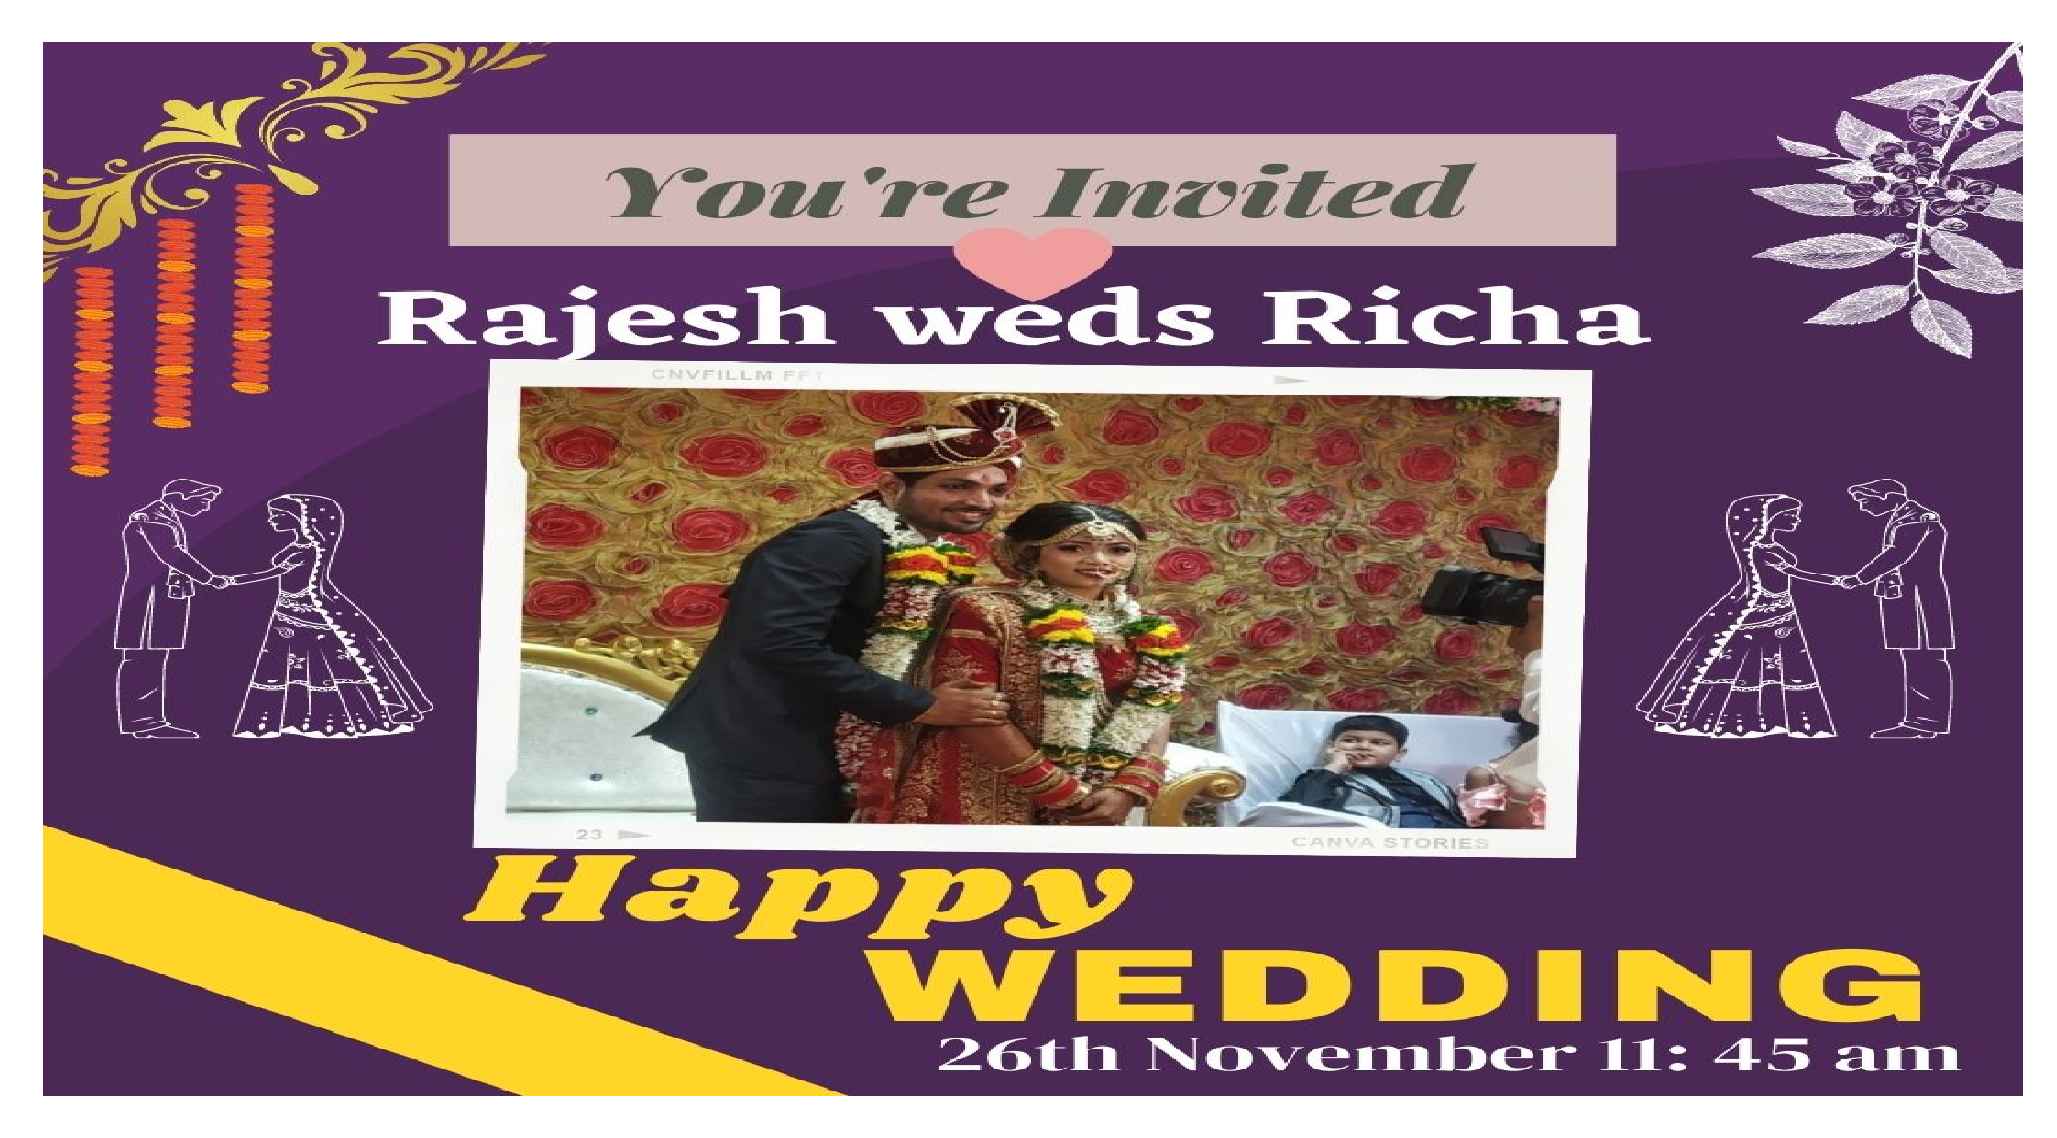 Mr. Rajesh Weds Richa